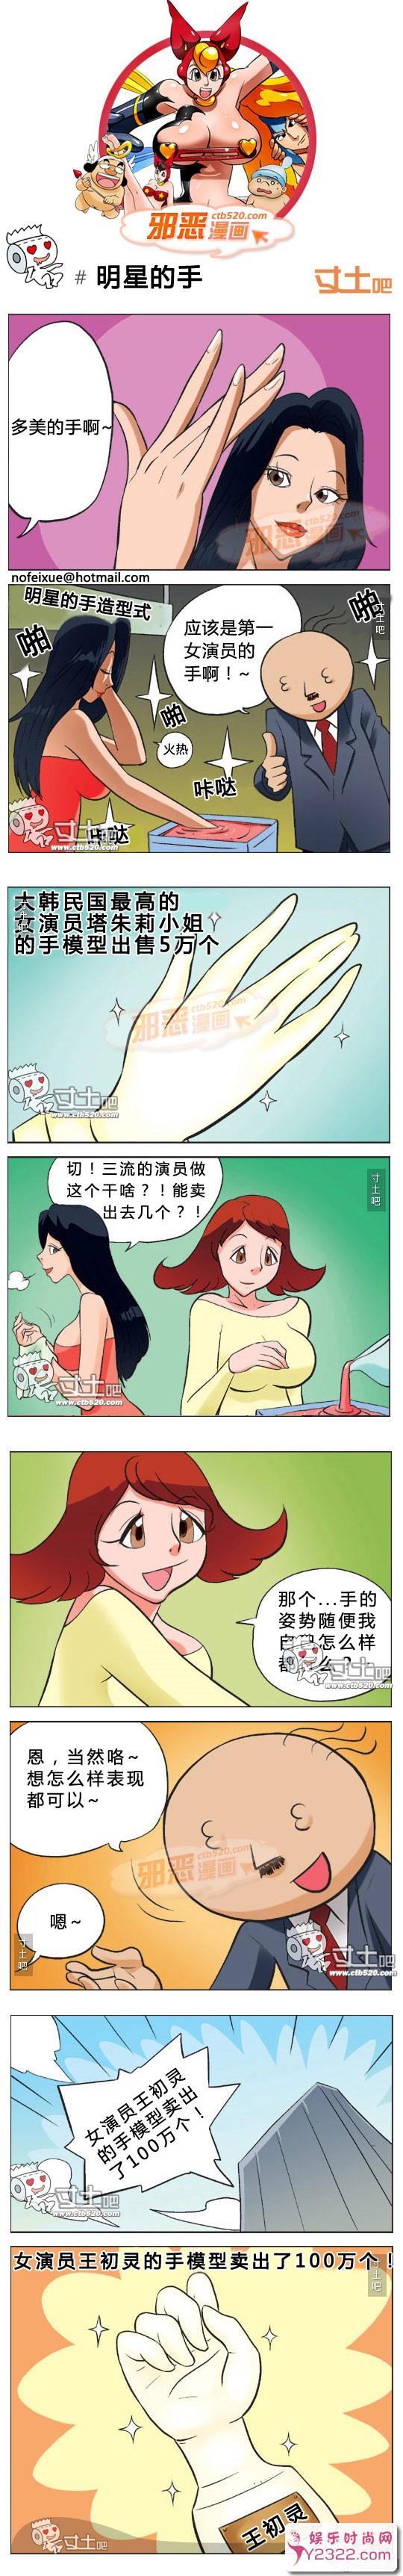 恋姐倾心：邪恶内涵漫画明星的手_m.y2ooo.com